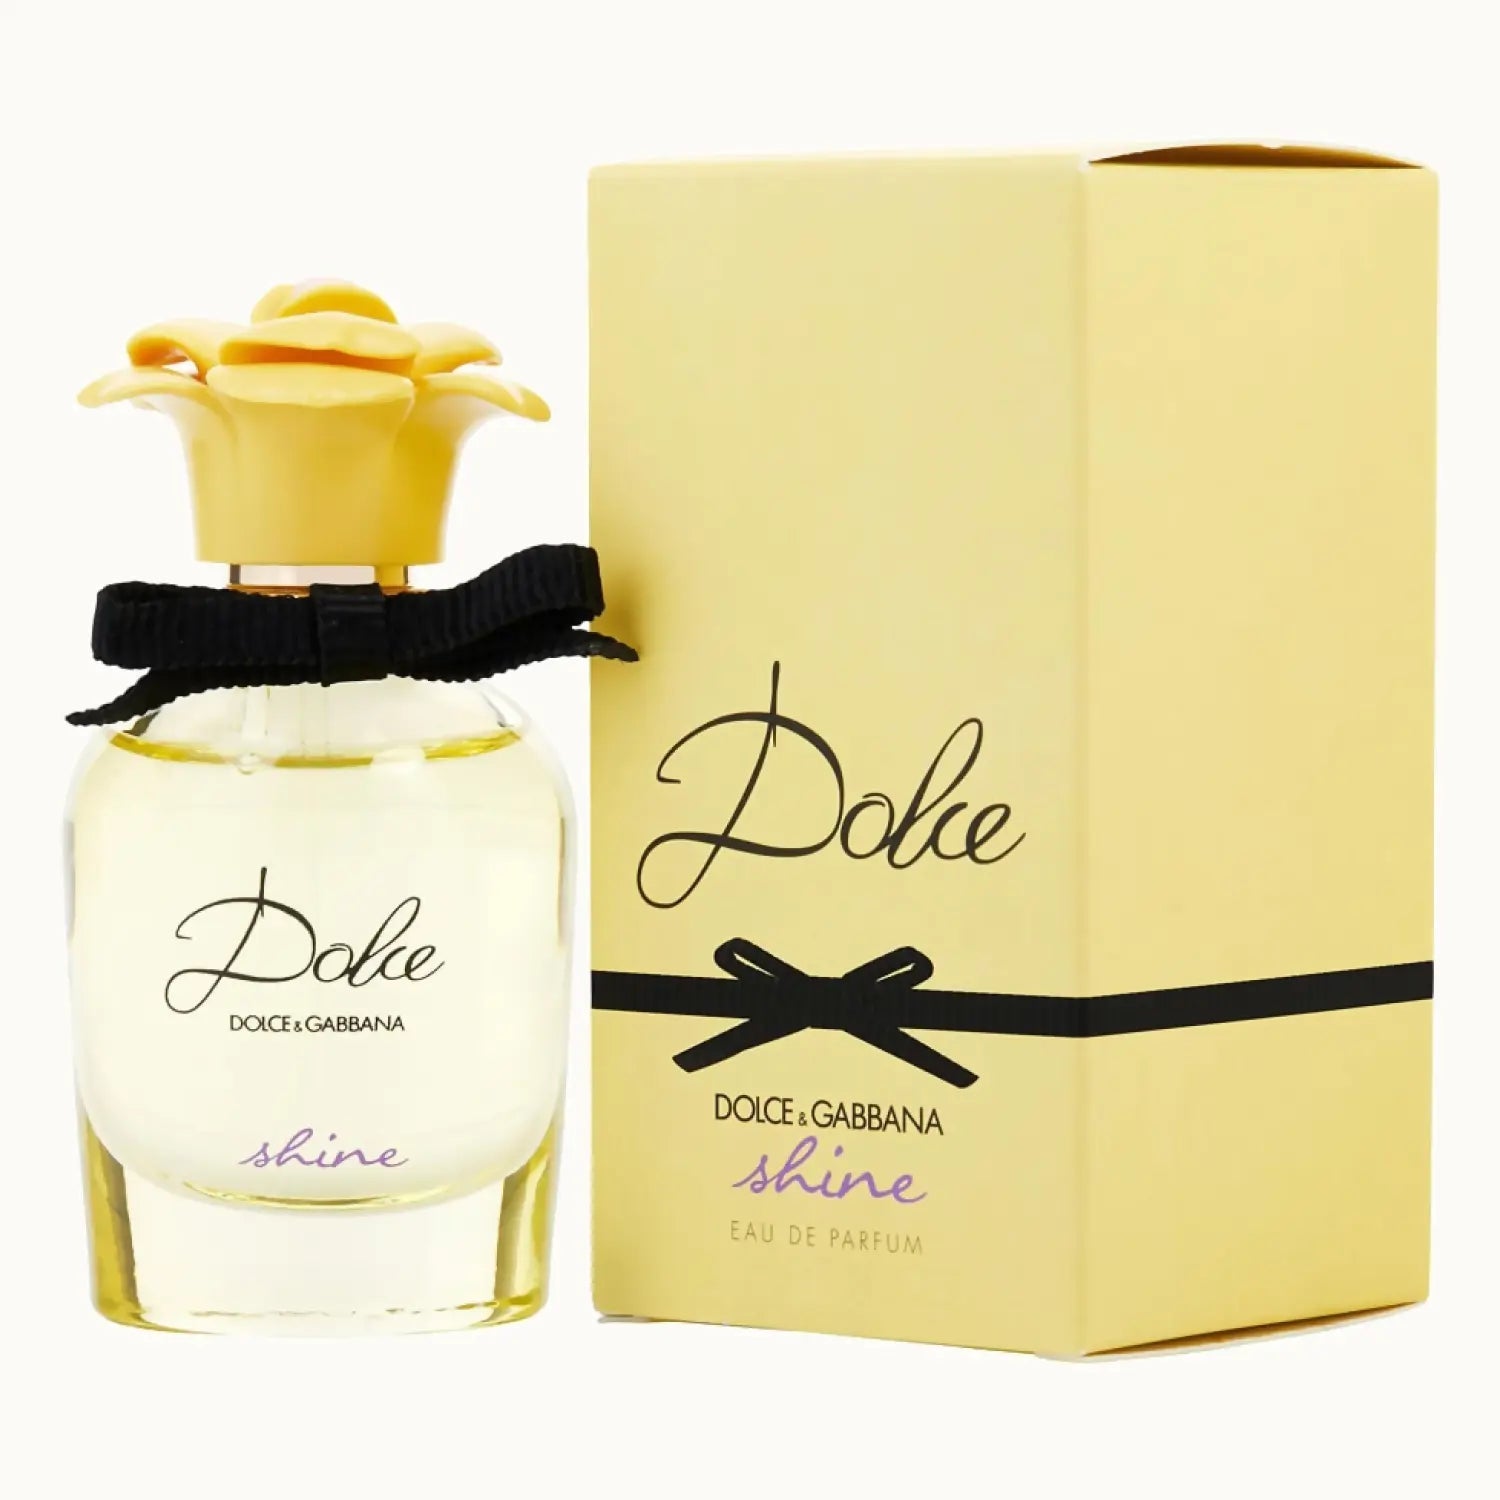 Dolce & Gabbana Dolce Shine EDP | My Perfume Shop Australia